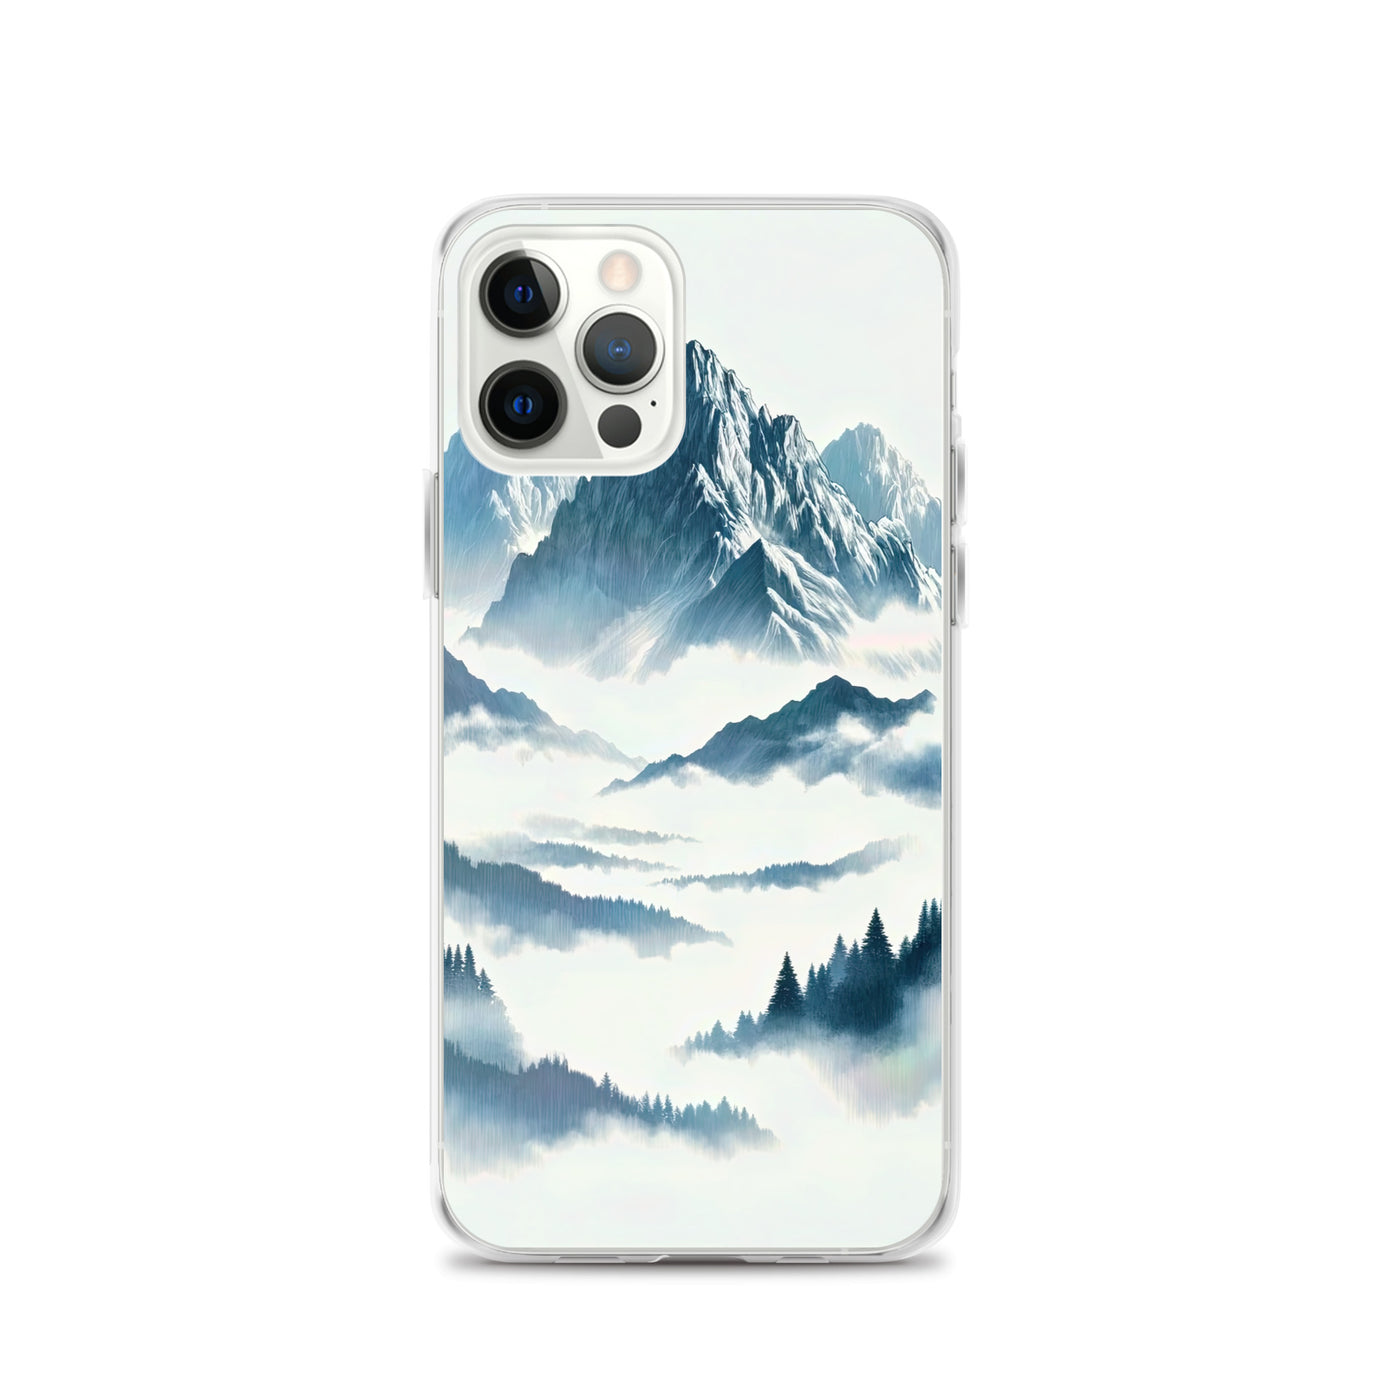 Nebeliger Alpenmorgen-Essenz, verdeckte Täler und Wälder - iPhone Schutzhülle (durchsichtig) berge xxx yyy zzz iPhone 12 Pro